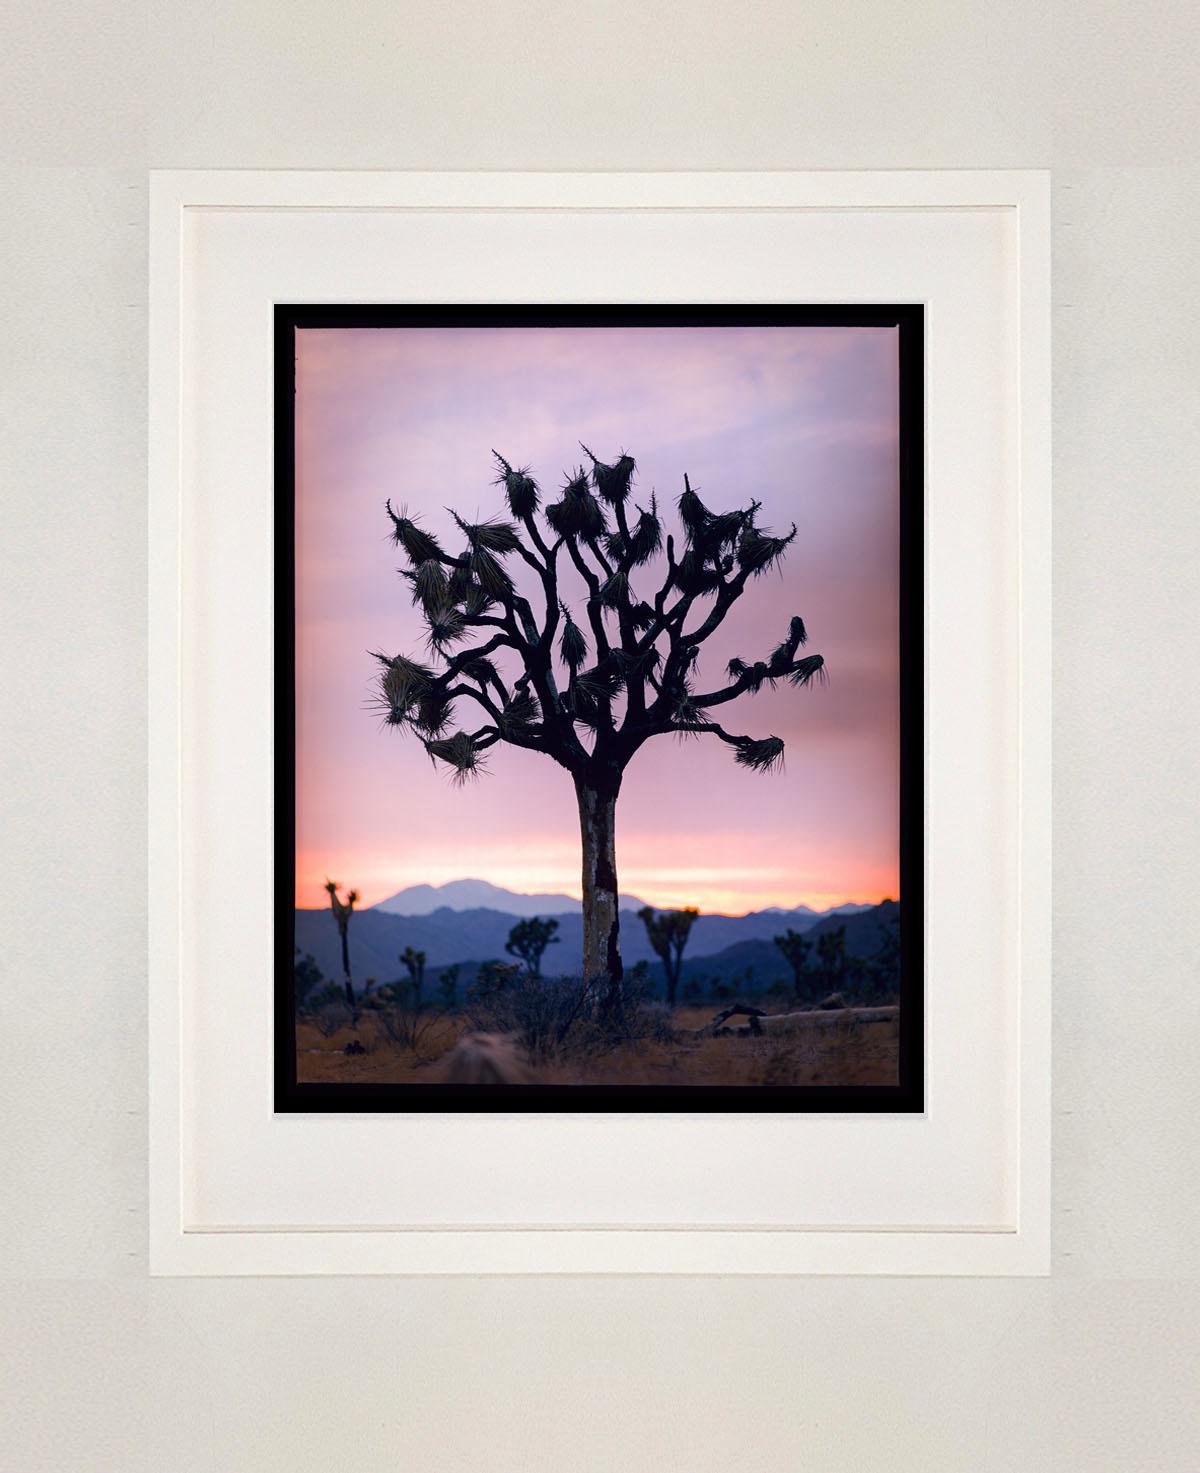 Joshua Tree, Mojave-Wüste, Kalifornien – amerikanische Landschaftsfotografie (Zeitgenössisch), Photograph, von Richard Heeps